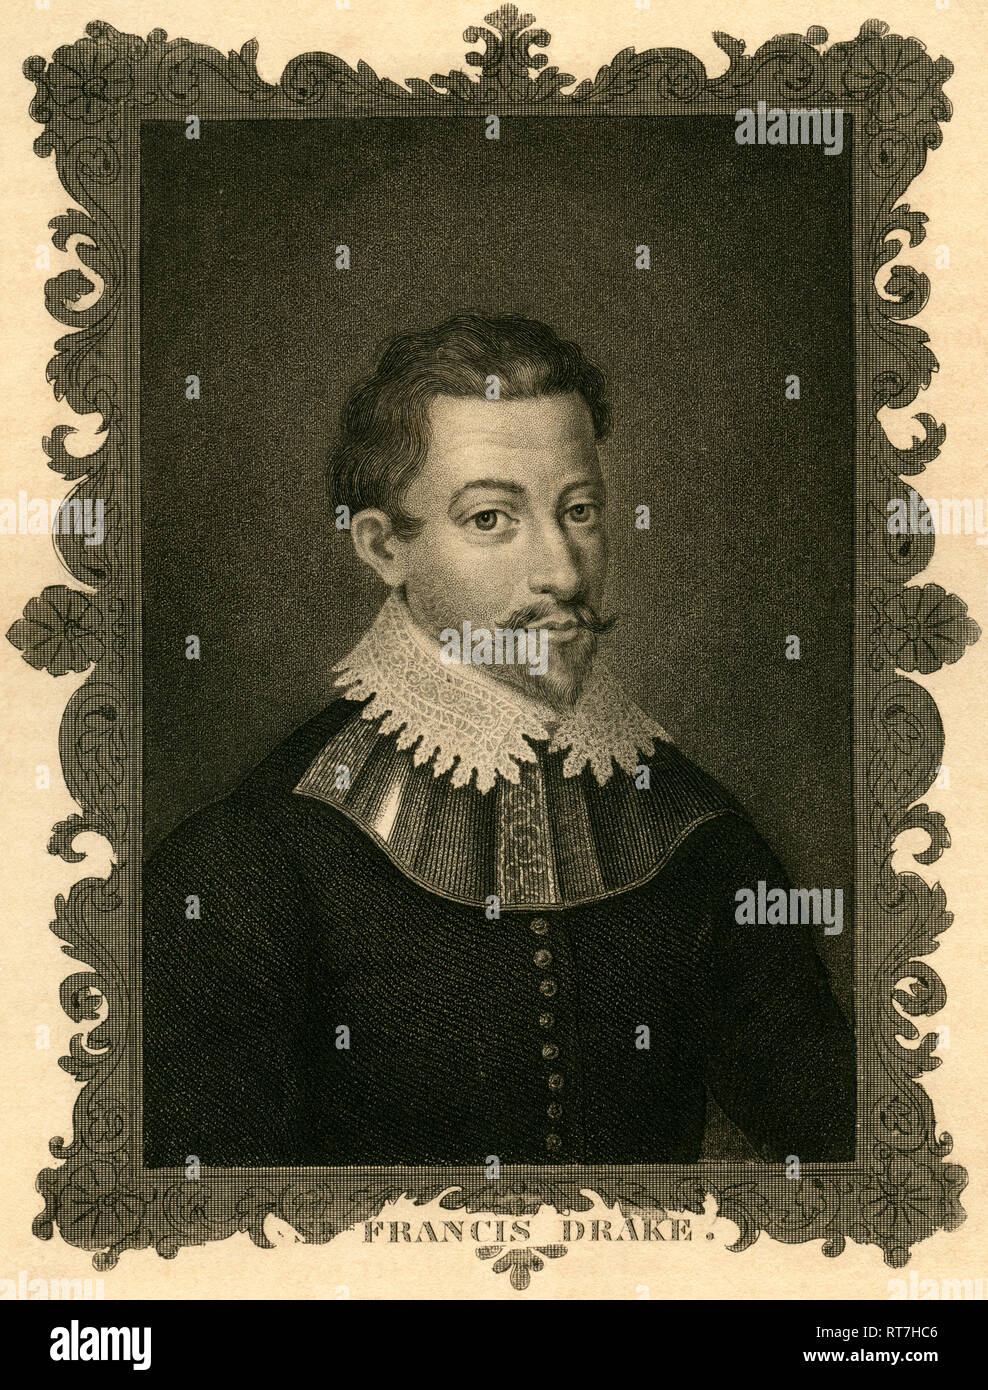 Sir Francis Drake, inglese capitano di mare e viceadmiral, incisione in acciaio da circa 1850., artista del diritto d'autore non deve essere cancellata Foto Stock